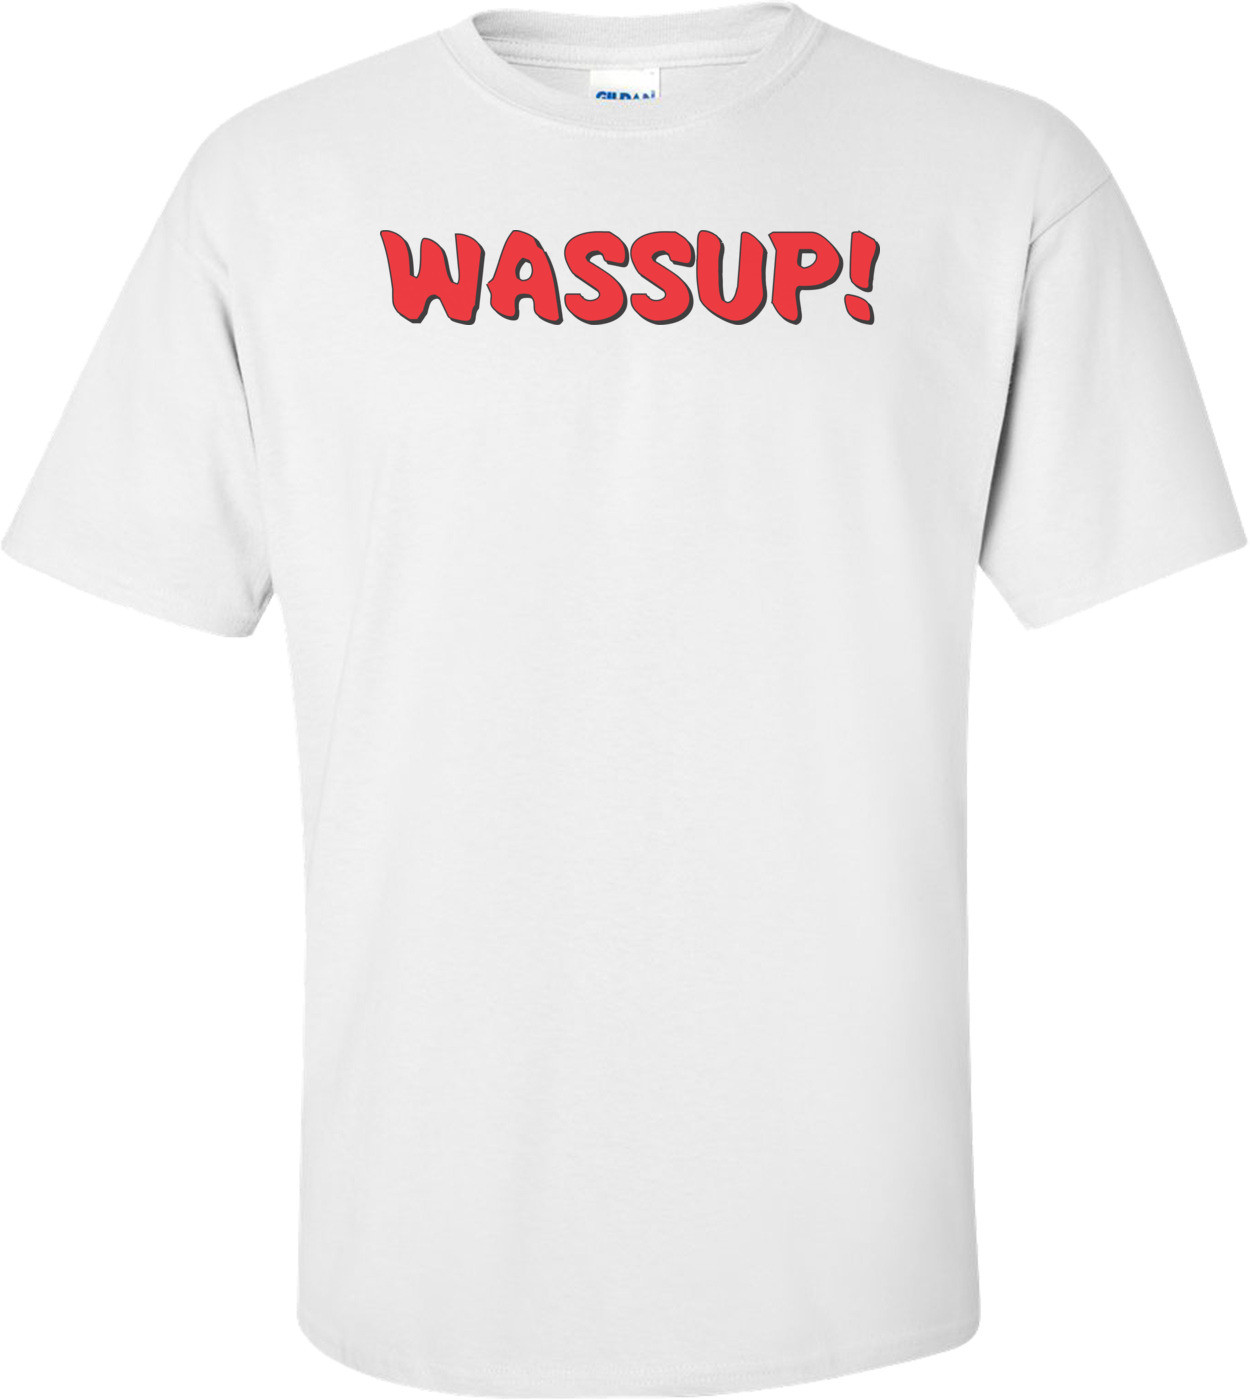 Wassup - Budweiser T-shirt